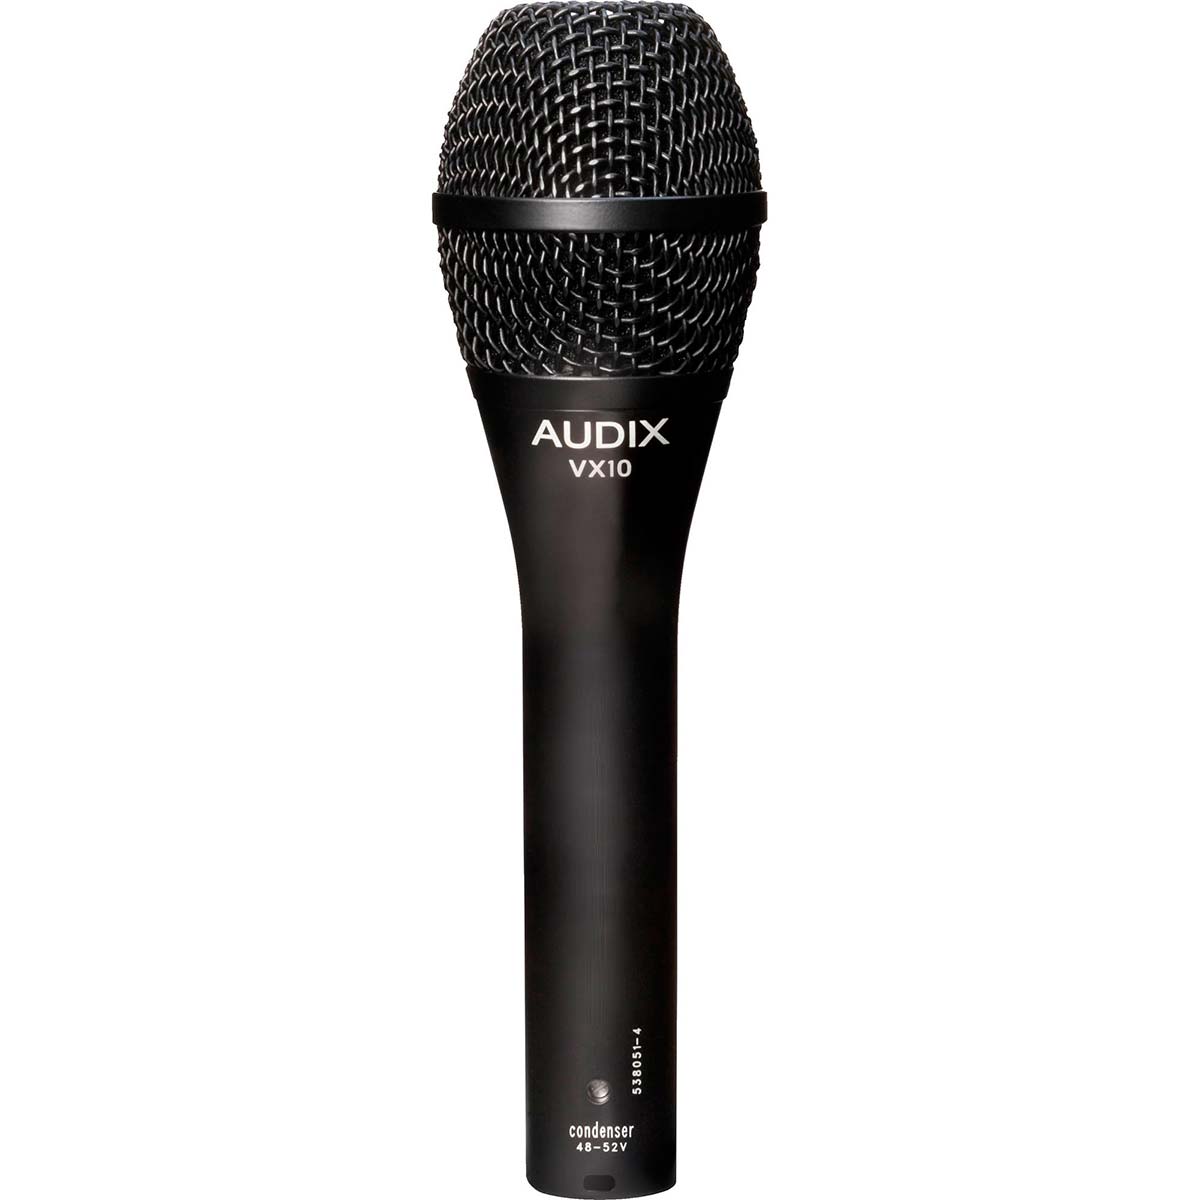 Micrófono condensador cardioide Audix VX10